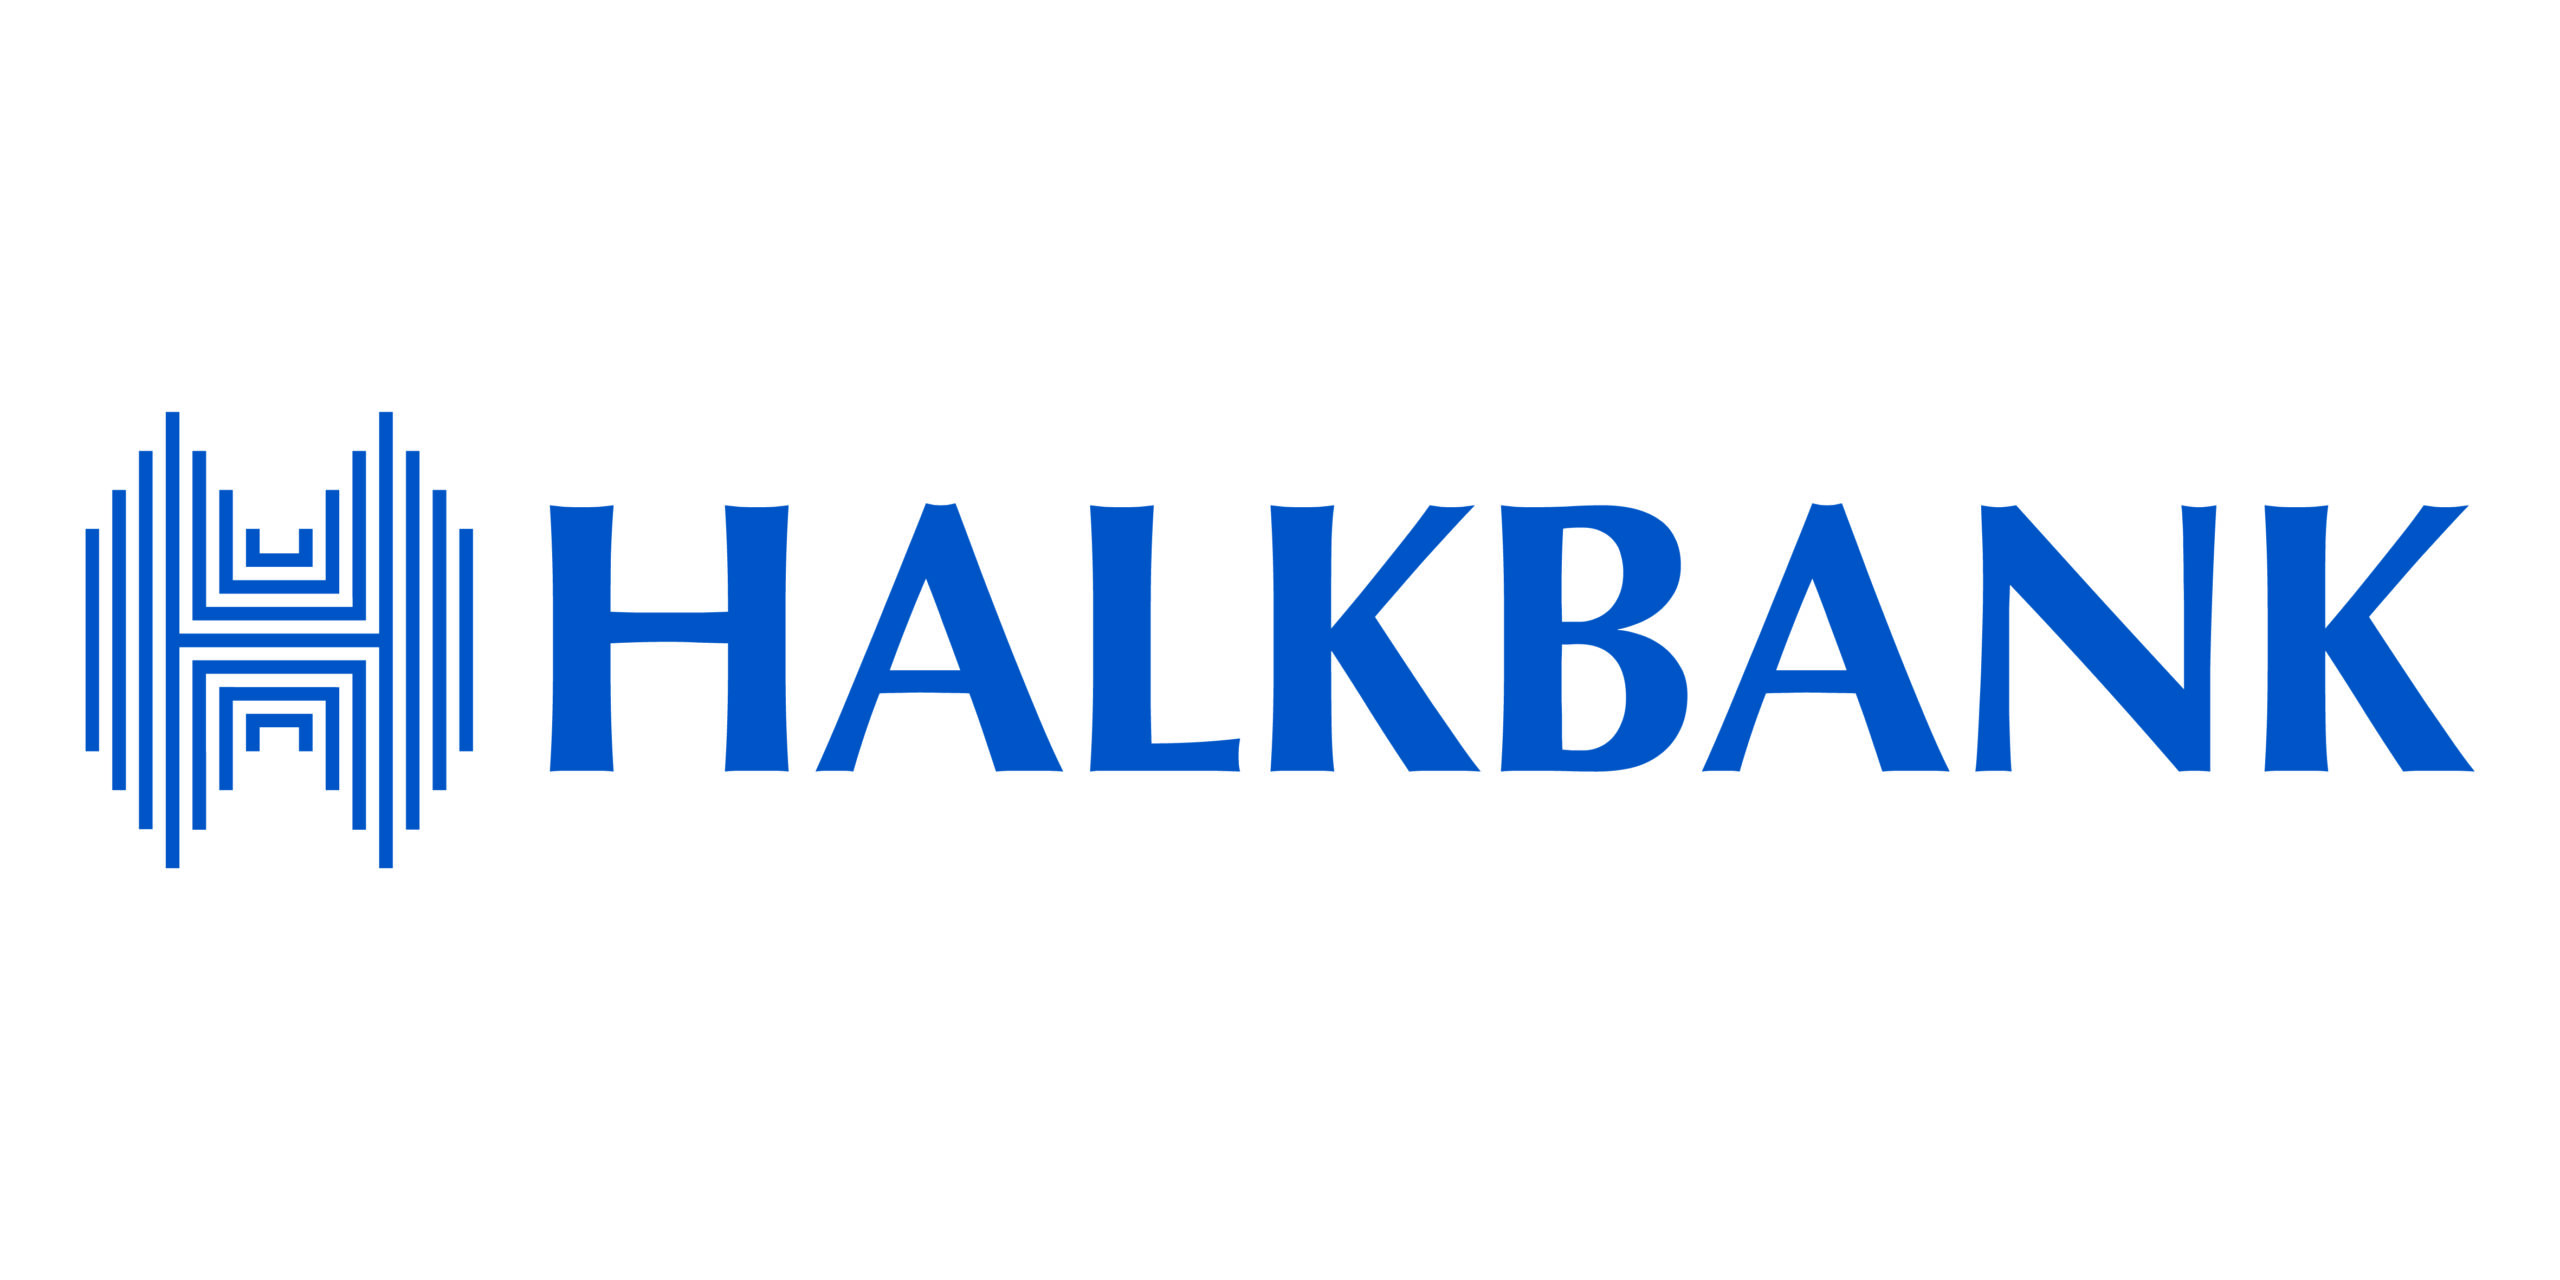 Halkbank Promosyon Miktarını Arşa Taşıdı! Maaşını Halkbank'a Taşıyana 24.000 TL Promosyon Müjdesi